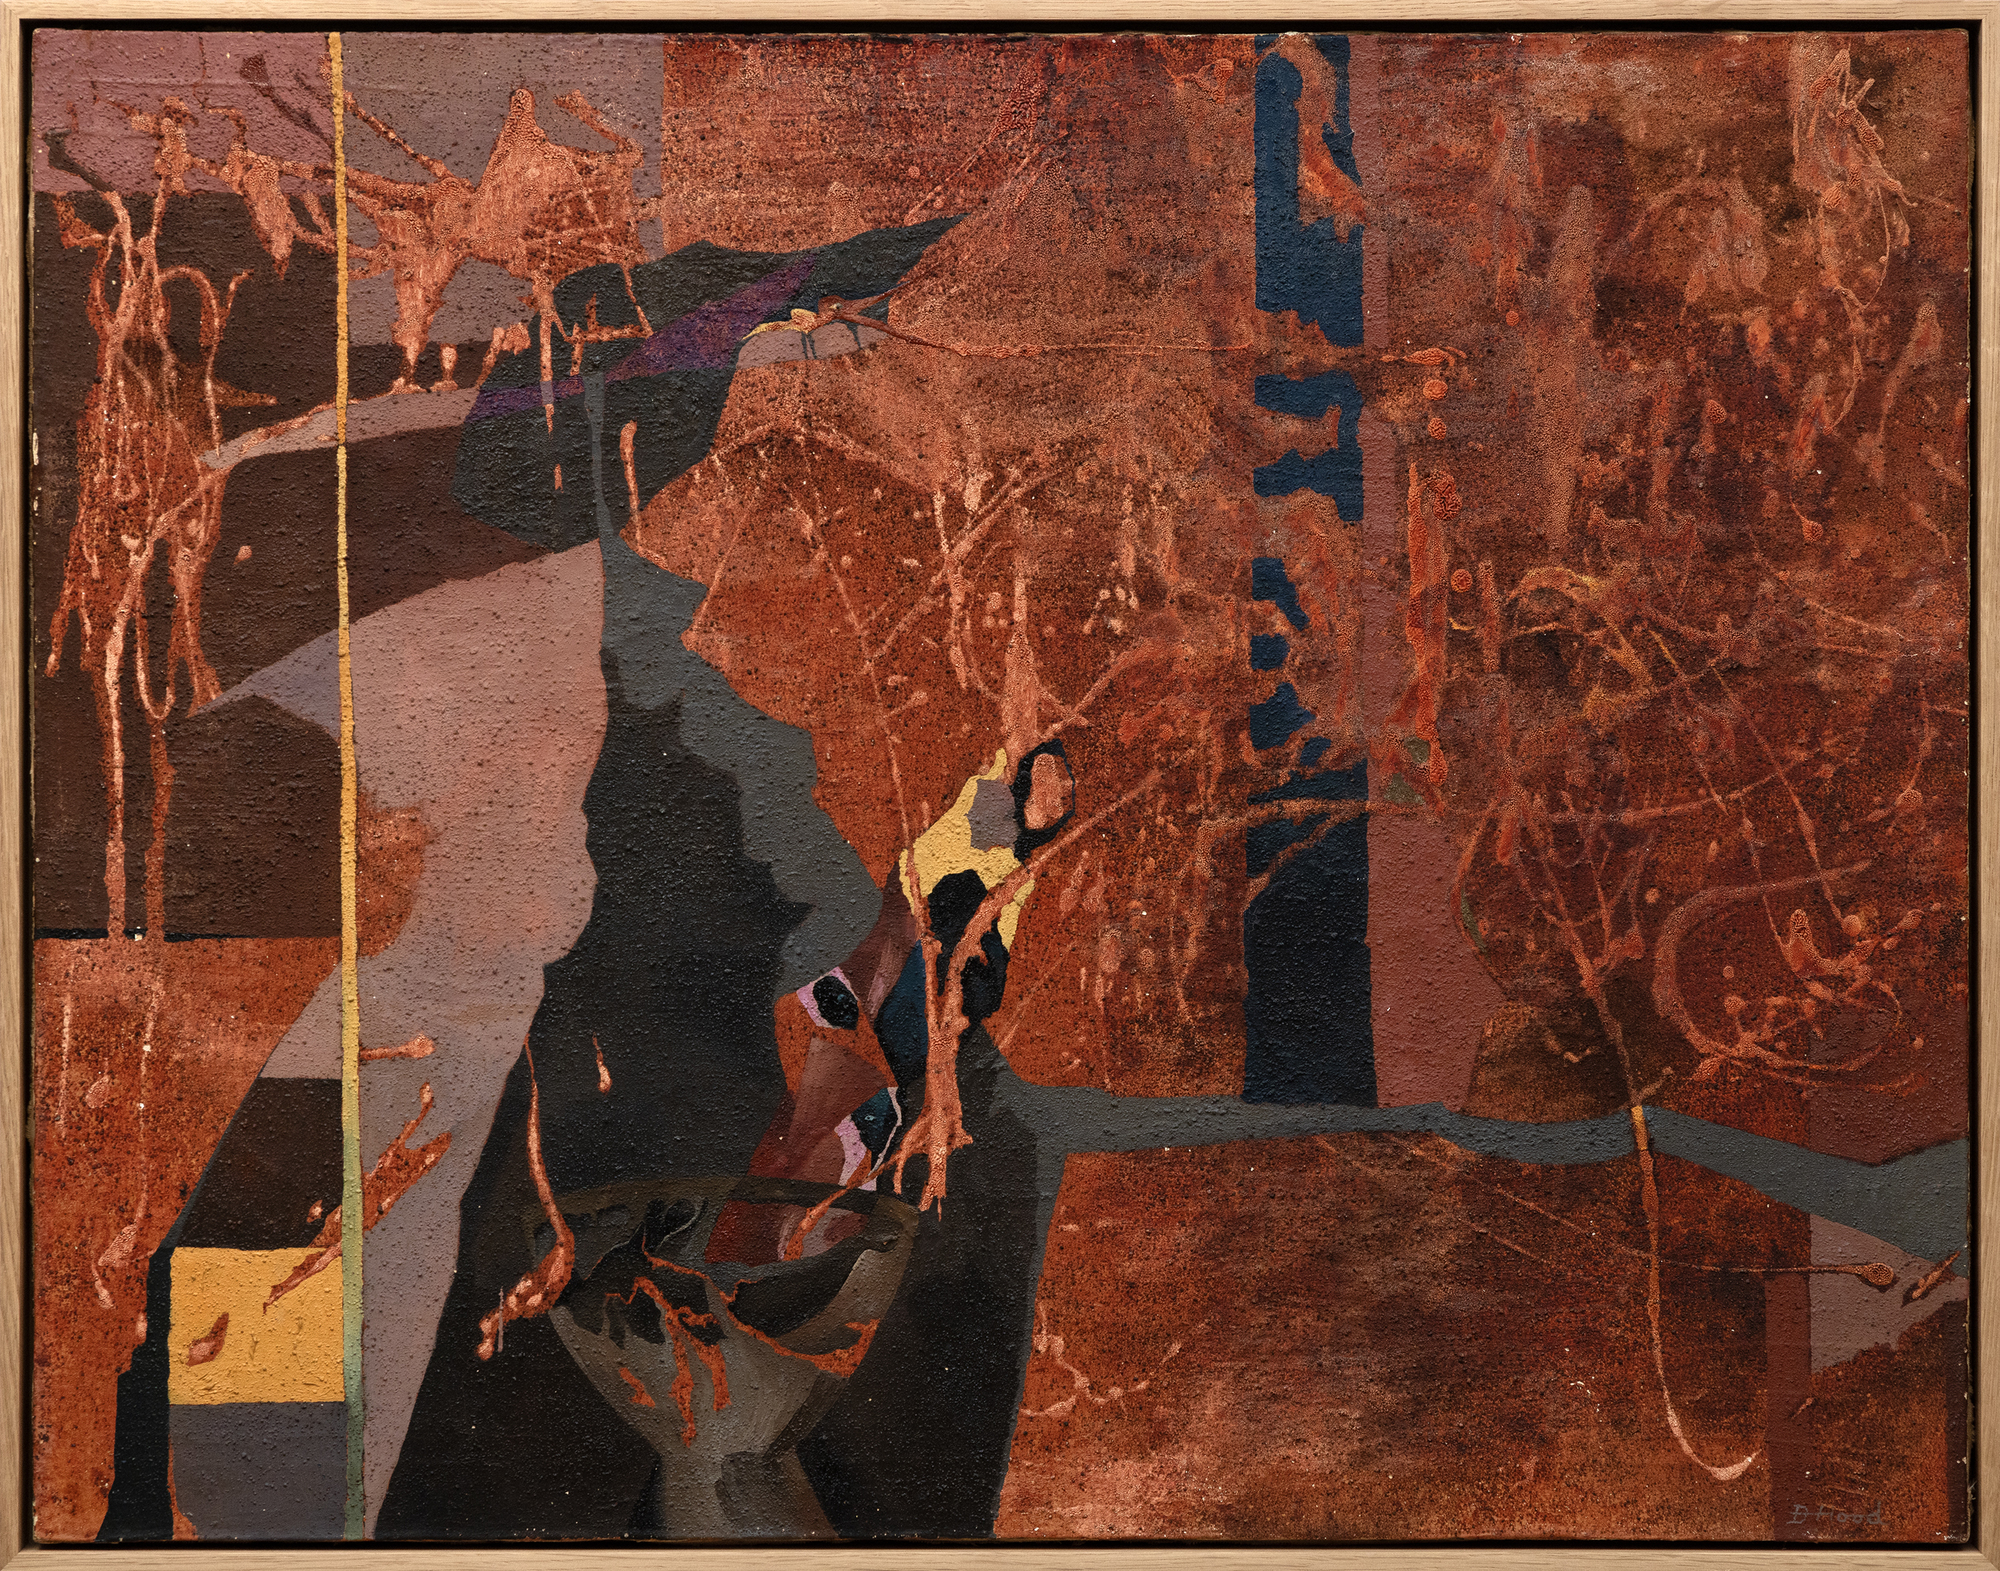 当多萝西·胡德（Dorothy Hood）在1956年画《精灵》时，她探索了新的领域，从她对自然和人体的观察中发展了各种方法和有机形式的词汇。抽象和具象元素具有模糊性和变革性，它们相互作用，在形而上学的汤中交织、交织和融合身份。在《精灵》中，抽象不是编织挂毯的形式停滞，而是在丝带状卷须的能量场中呼吸、伸展和流动。这是一件体现抽象与超现实主义融合的作品。它隐含的景深、透视和比喻参考暗示了一位女性，其拱形的身体为作品注入了情感、心理或神话的深度。这些元素捕捉了女性立场和处境的复杂本质，有效地融合了两种截然不同的艺术运动之间的界限。